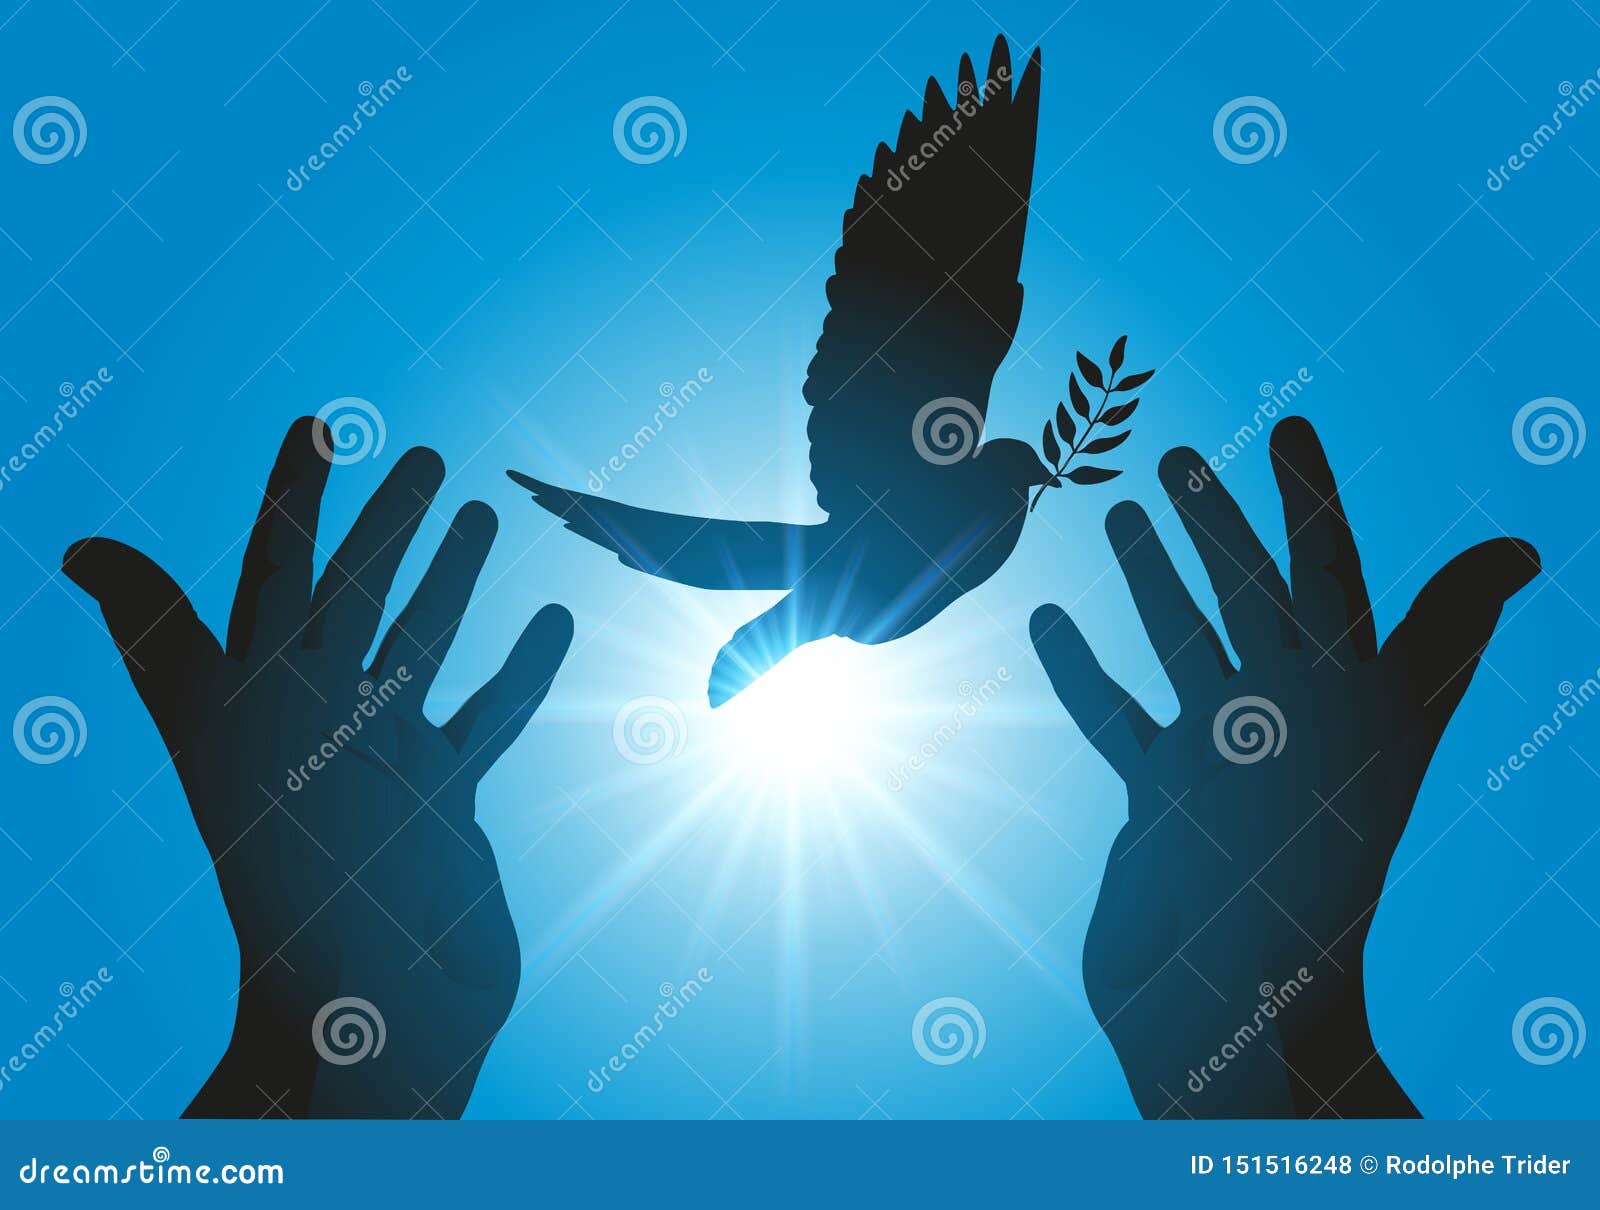 Símbolo De Paz Con Las Manos Unidas Que Lanzan El Vuelo De Un Pájaro En La  Puesta Del Sol Ilustración del Vector - Ilustración de manos, concepto:  151516248